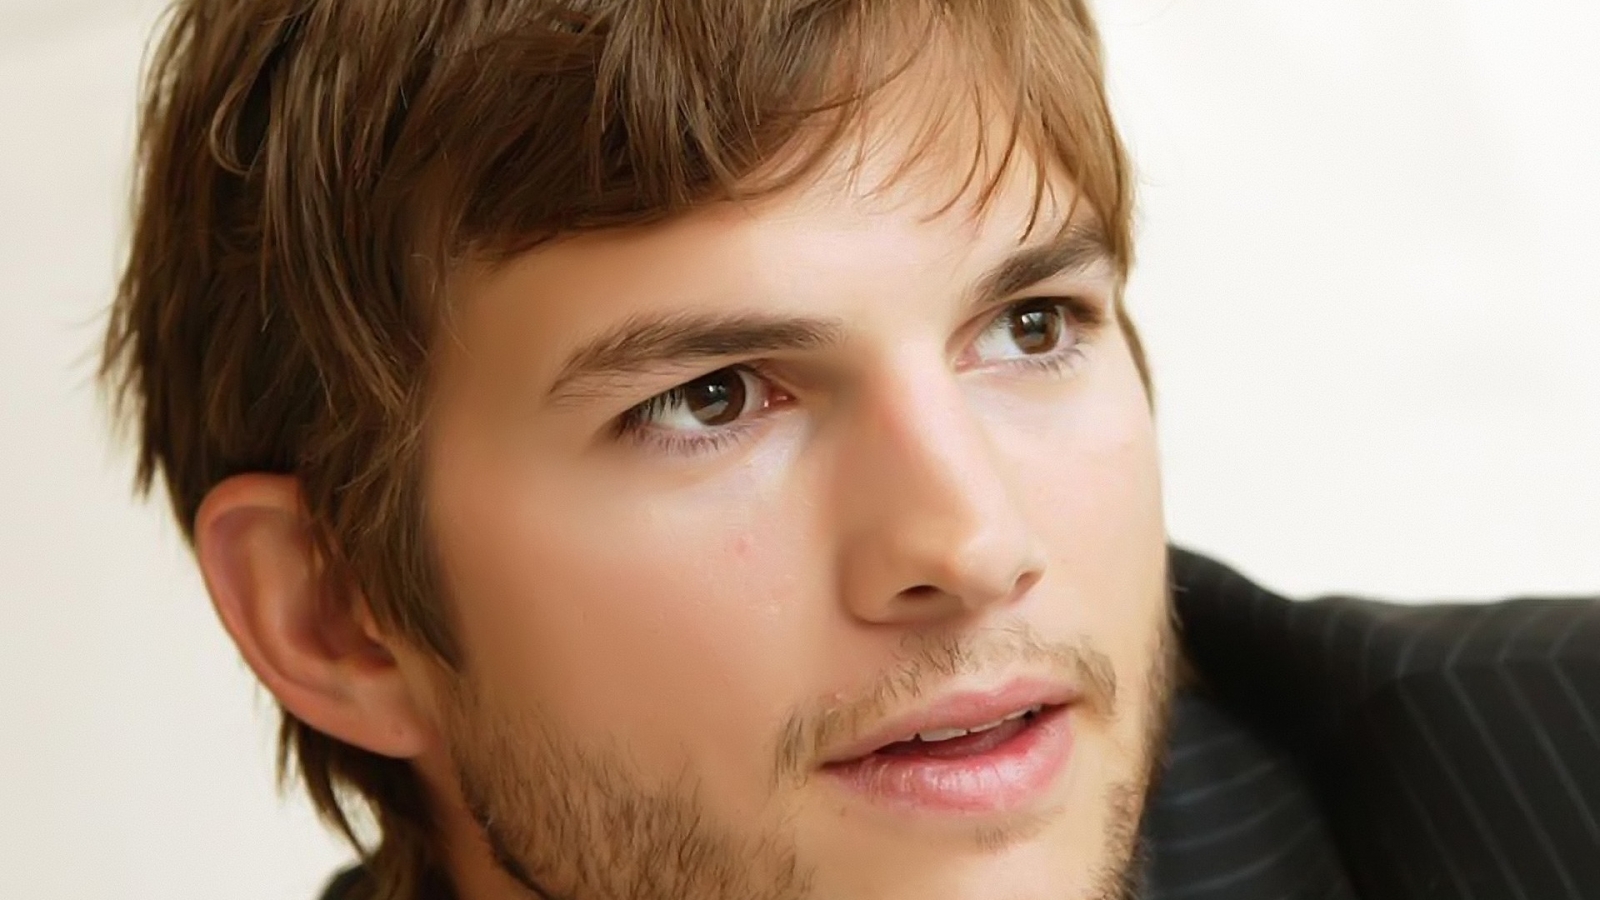 Ashton Kutcher Handsome for 1600 x 900 HDTV resolution